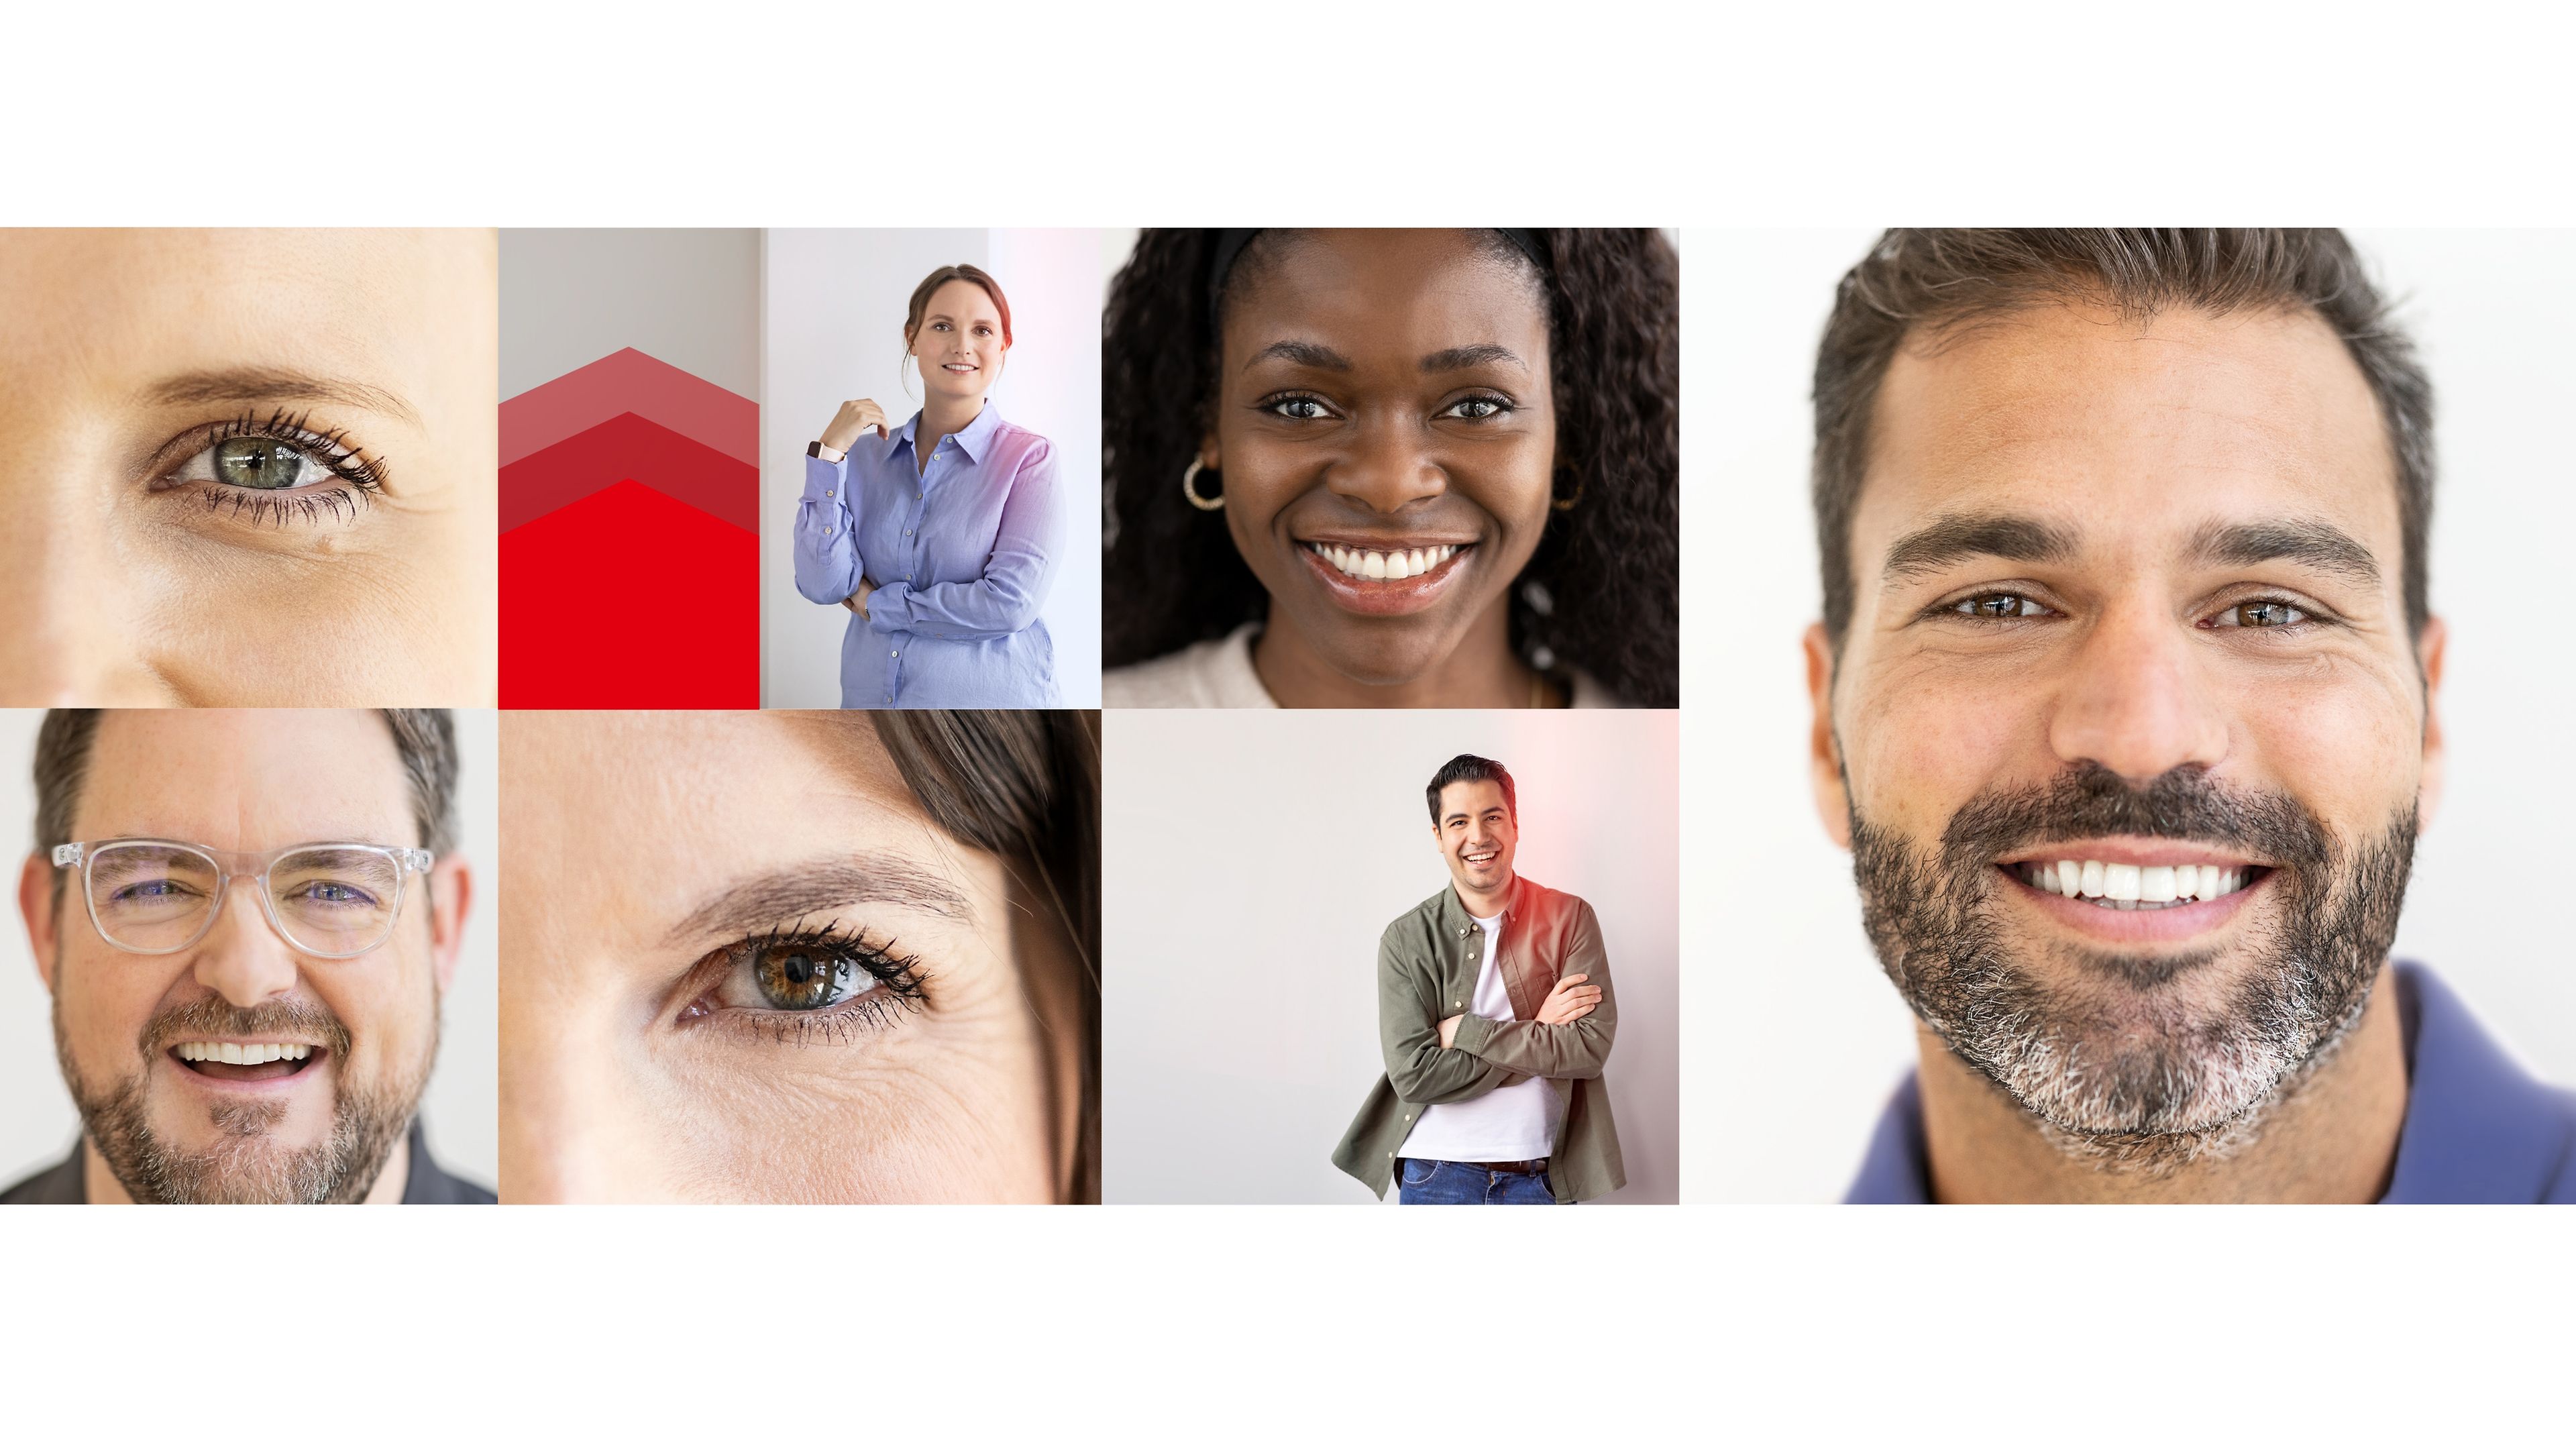 Varios retratos de empleados de Henkel reunidos en un collage